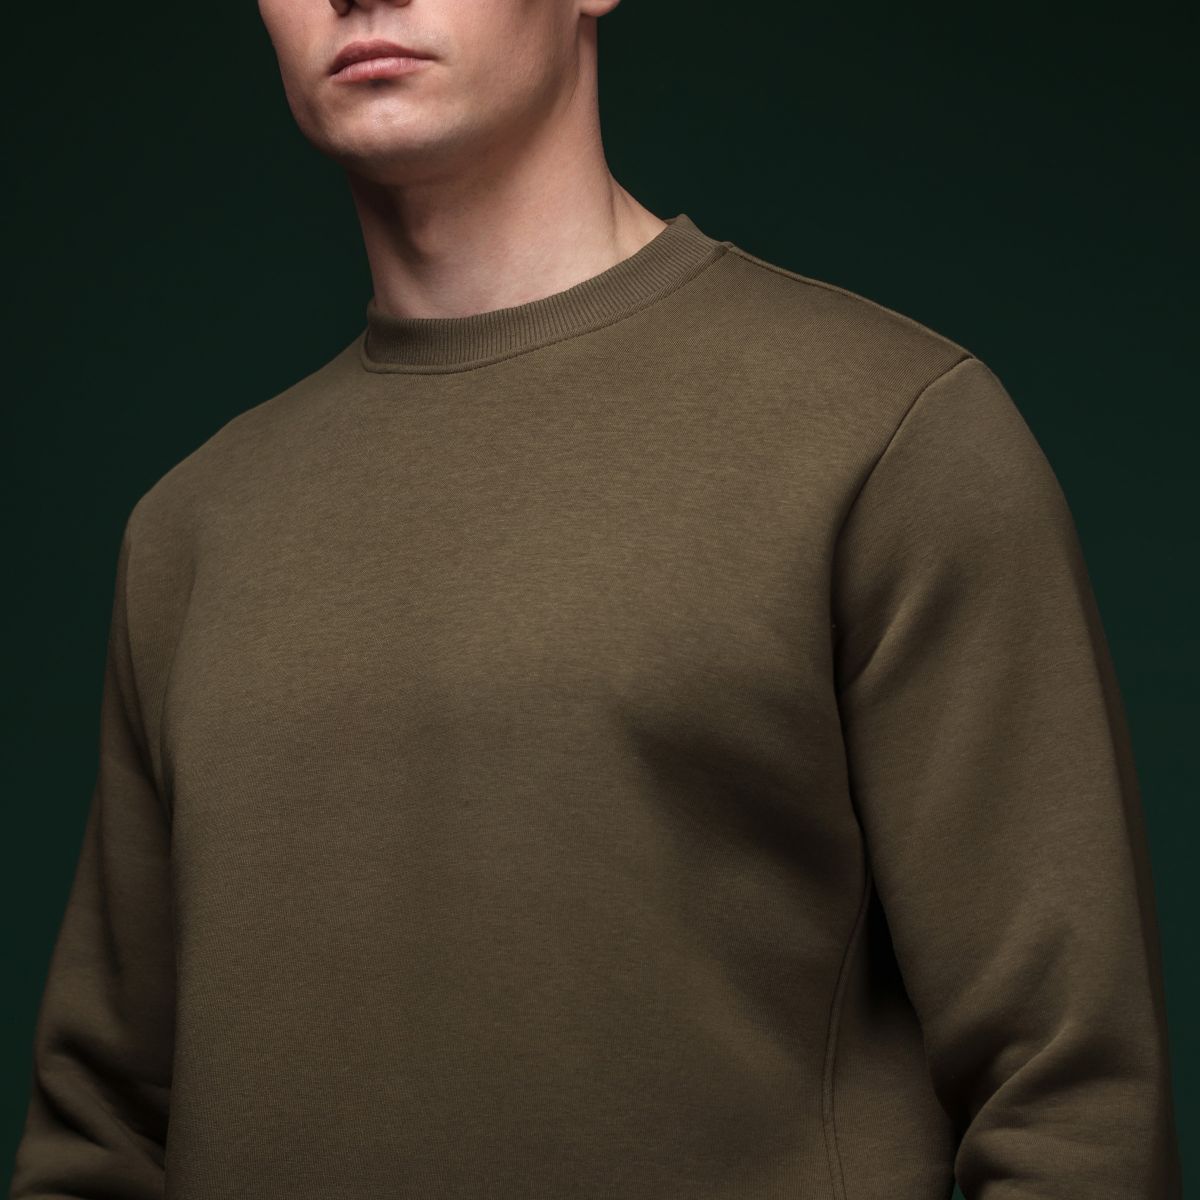 Світшот Base Soft Sweatshirt. Вільний стиль. Колір Олива/Olive. Розмір L 4